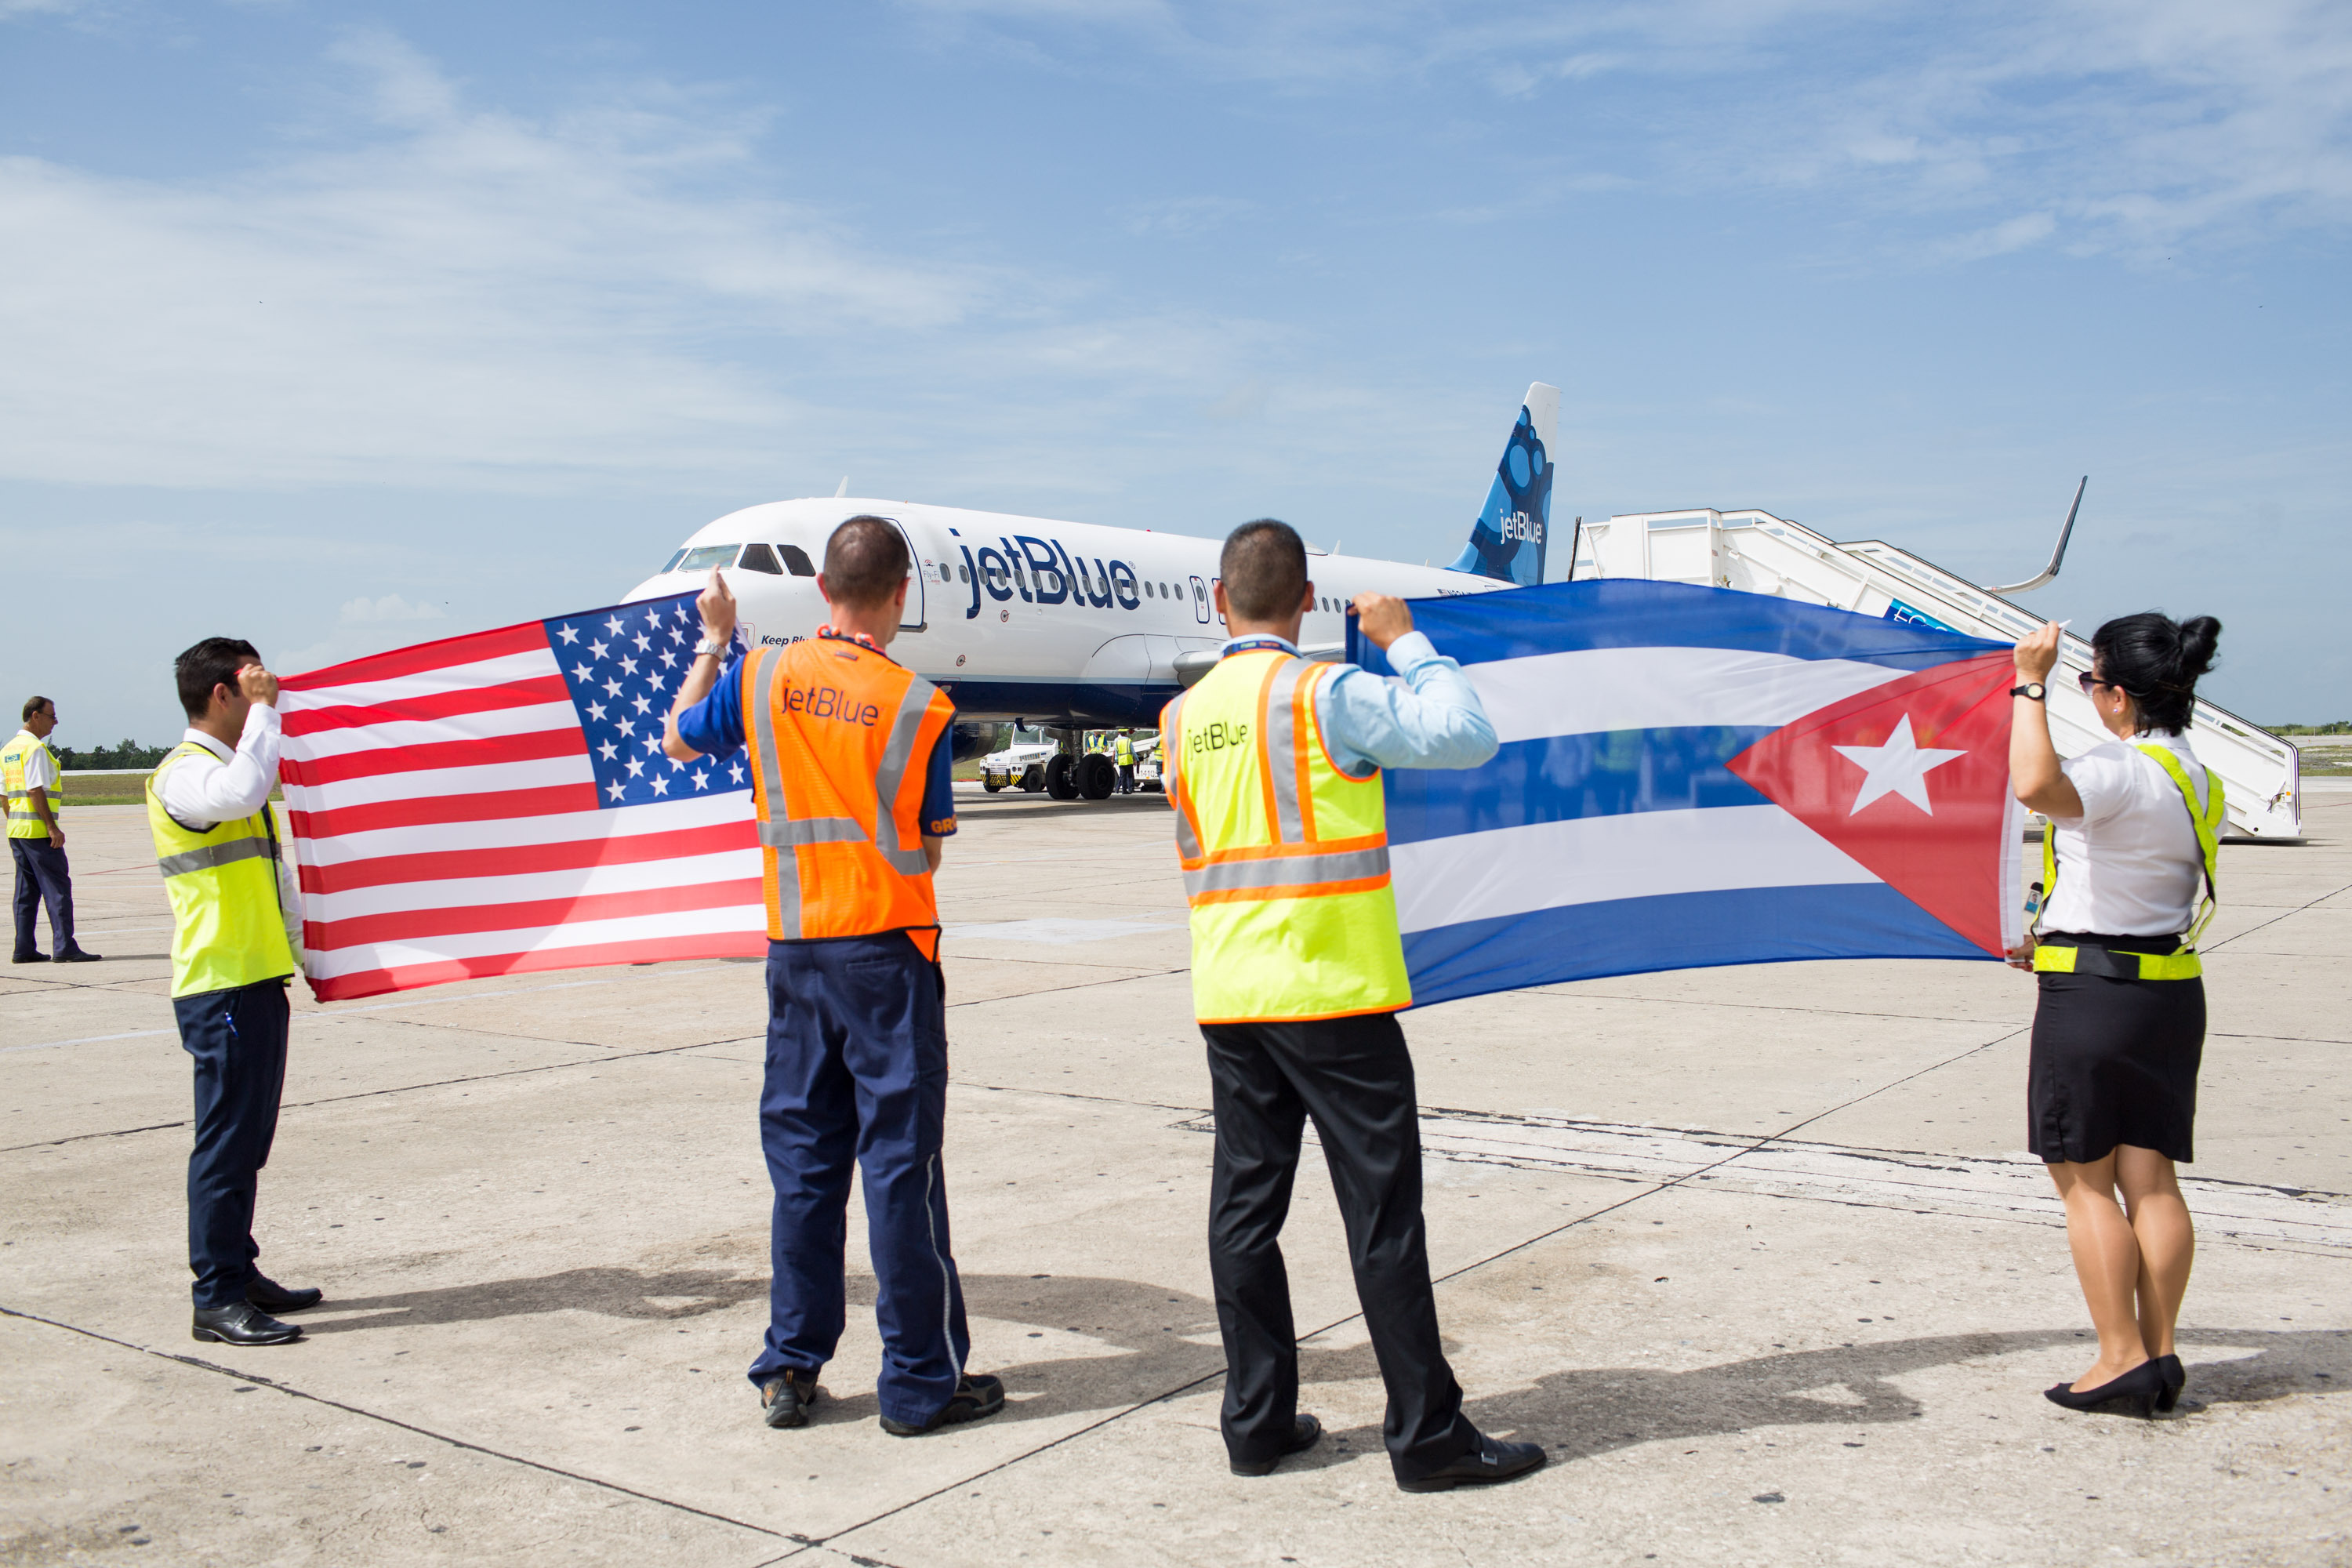 Estados Unidos retiram restrições de voo para Cuba. Entenda